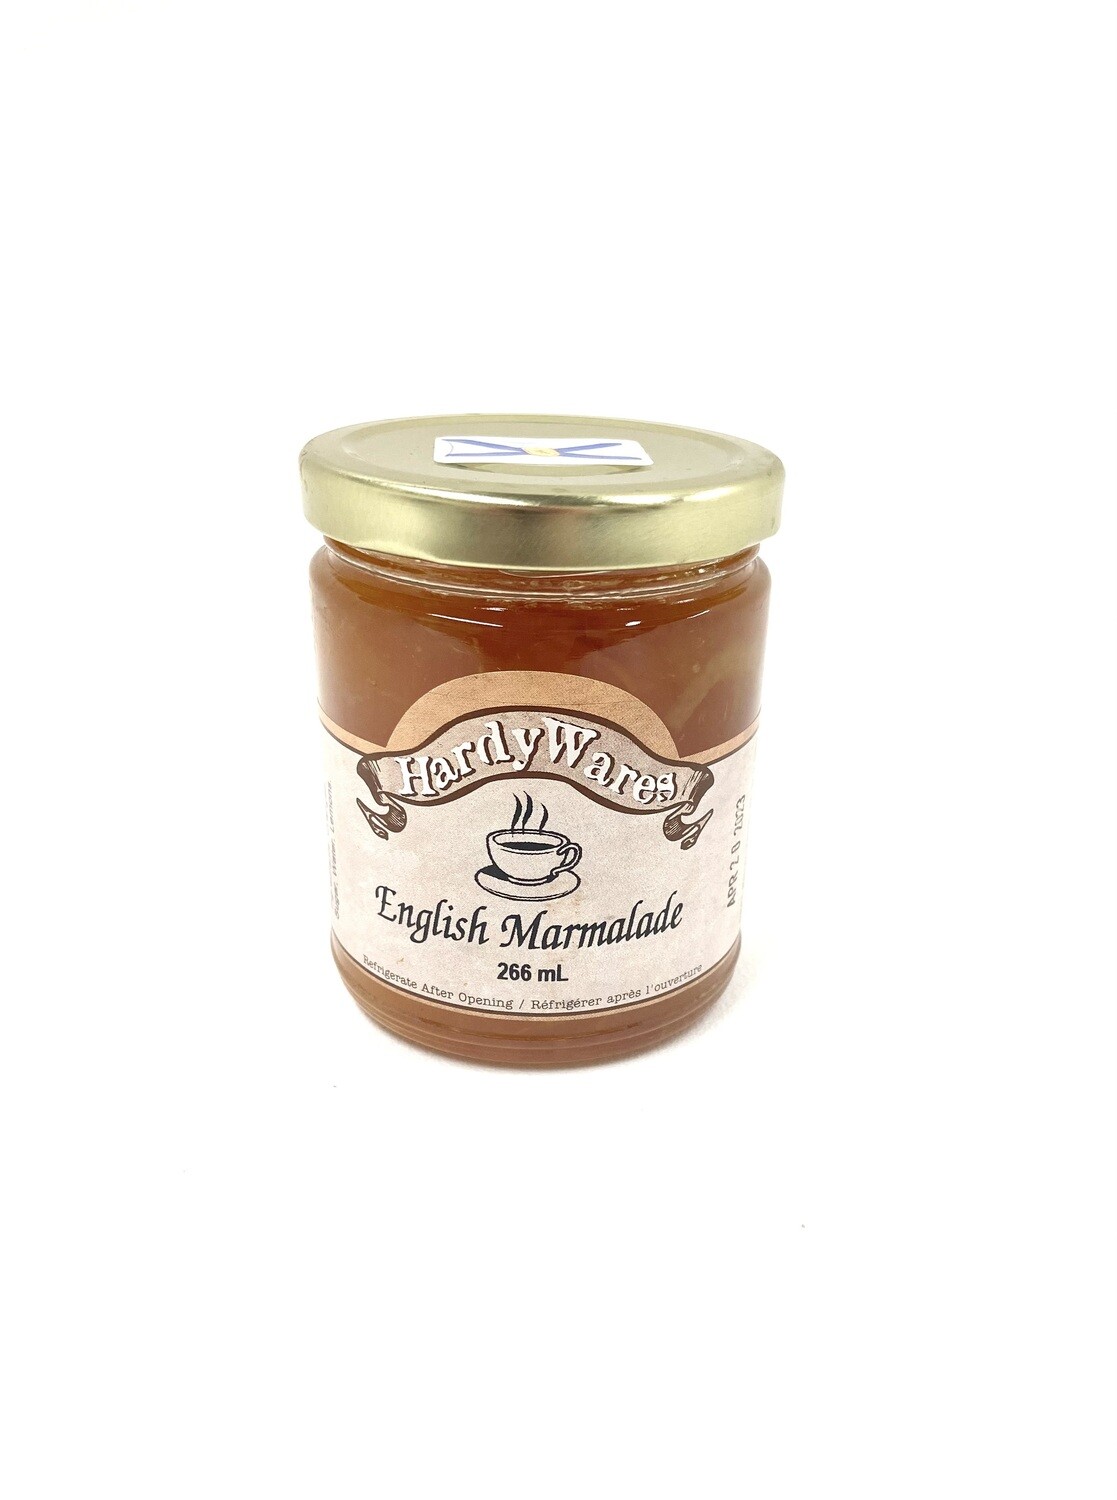 HardyWares English Marmalade